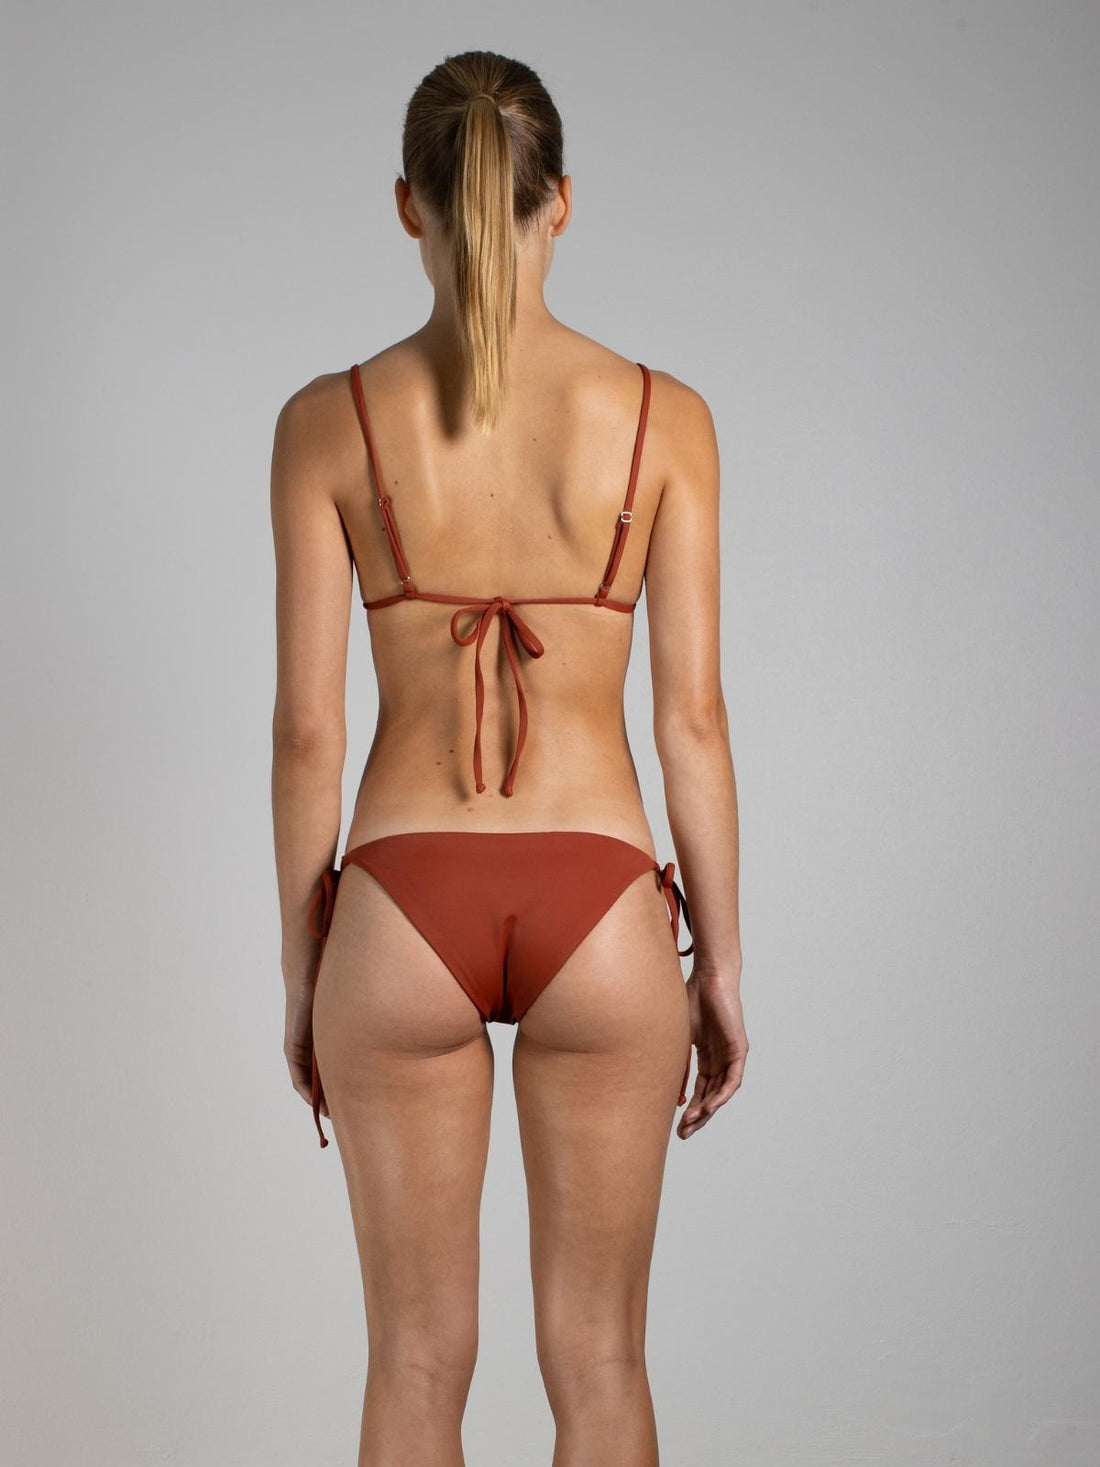 Triangle Bikini Top Naya in Rust - Brez Swim